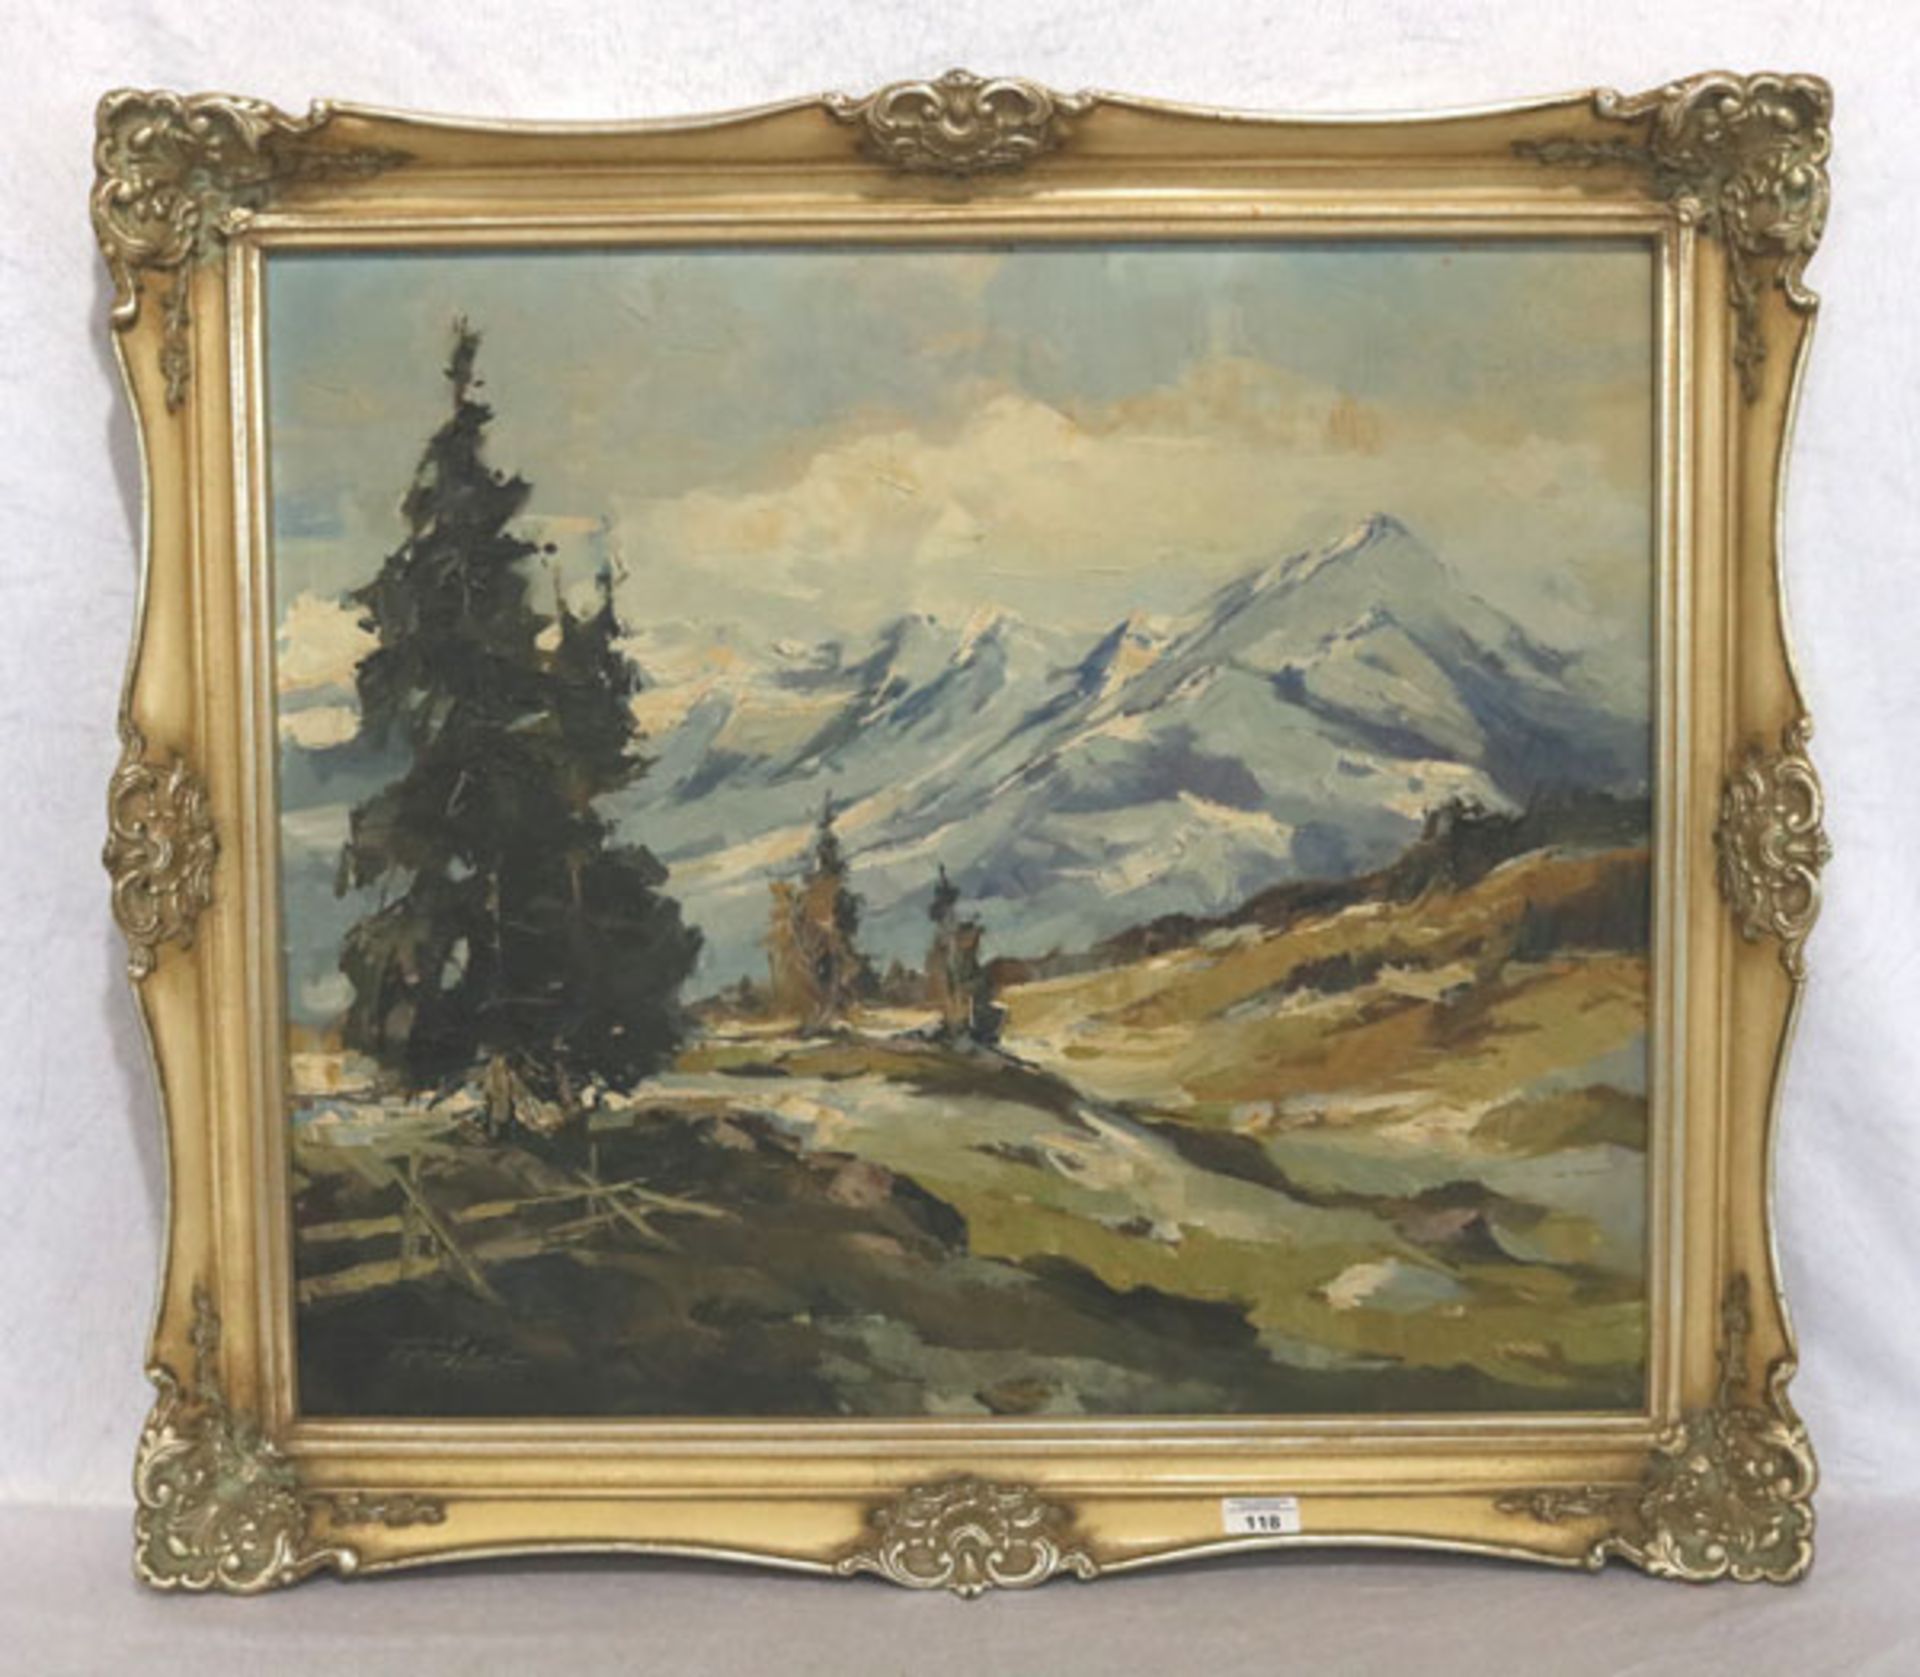 Gemälde ÖL/LW 'Hochgebirgs-Landschaft', signiert Trätzl, wohl Robert, gerahmt, Rahmen leicht